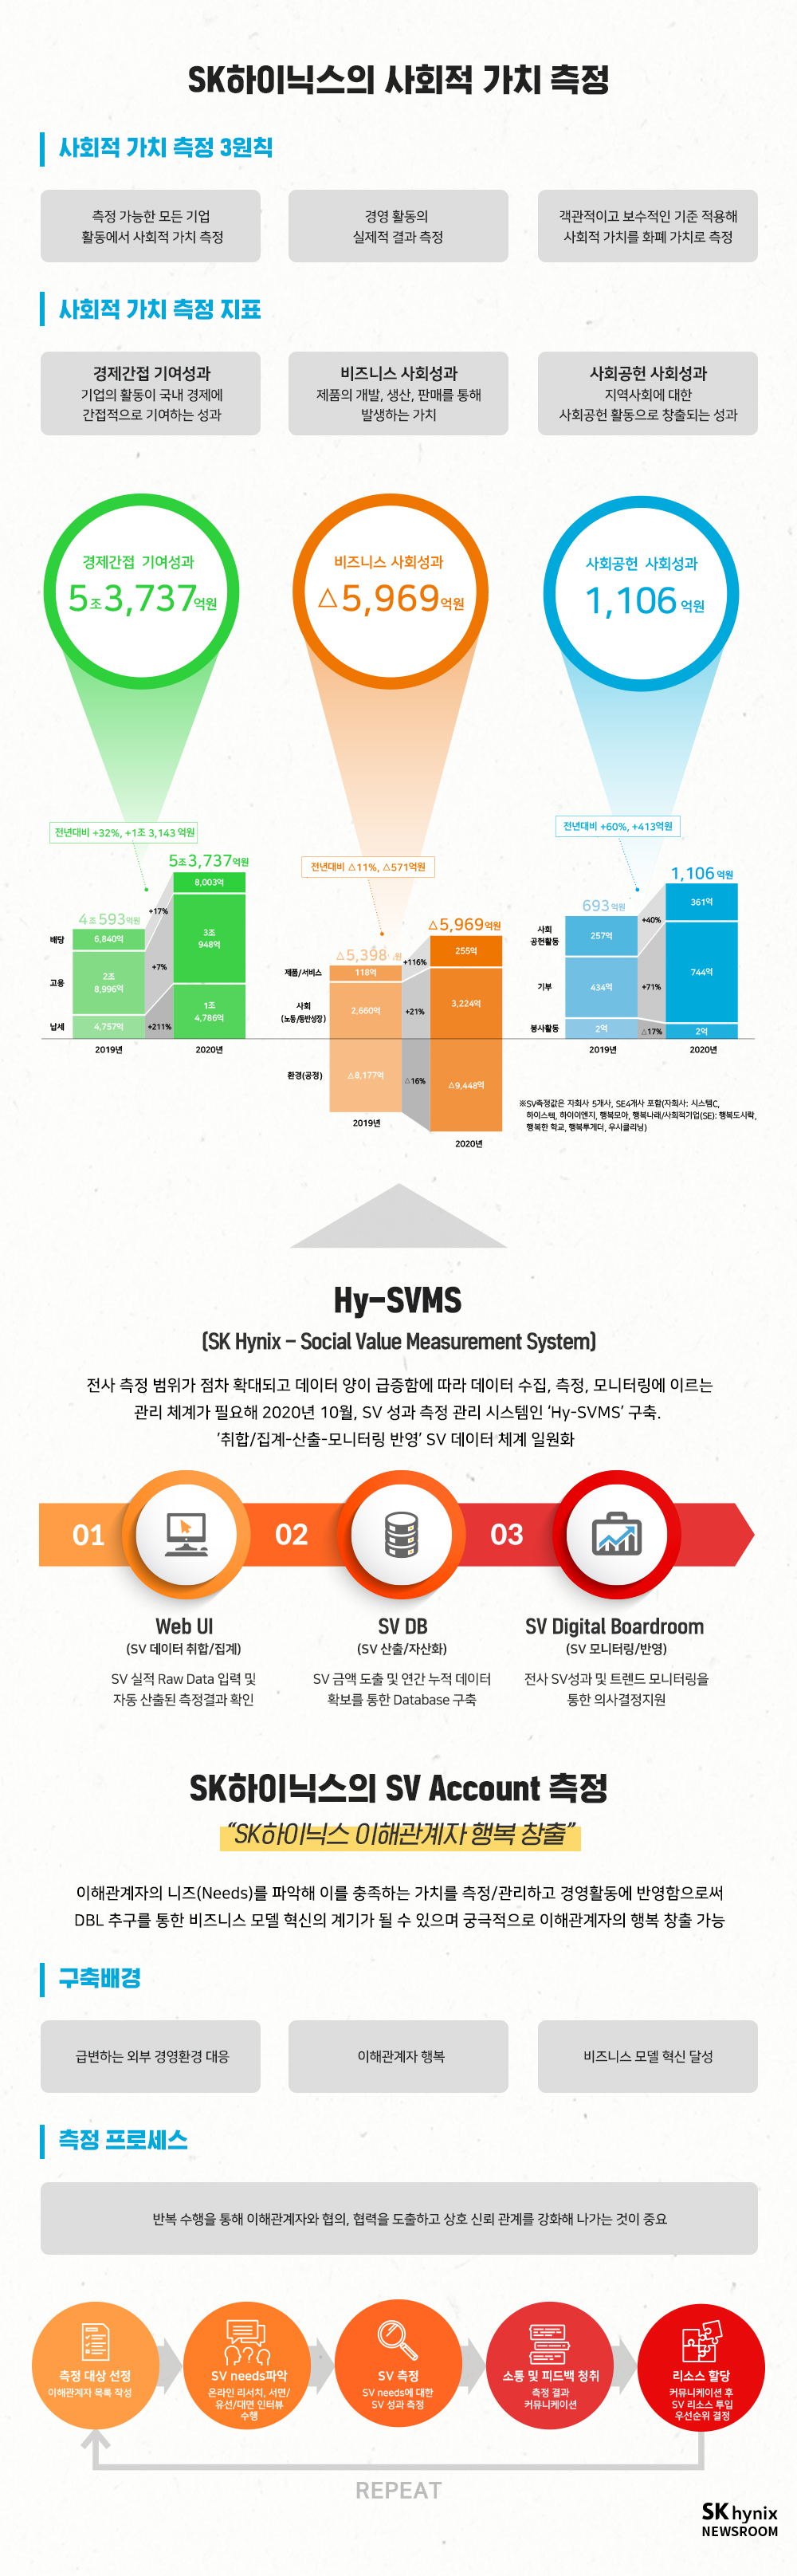 챕터03 SK하이닉스 사회적 가치 측정, Hy-SVMS, SK하이닉스의 SV Account 측정